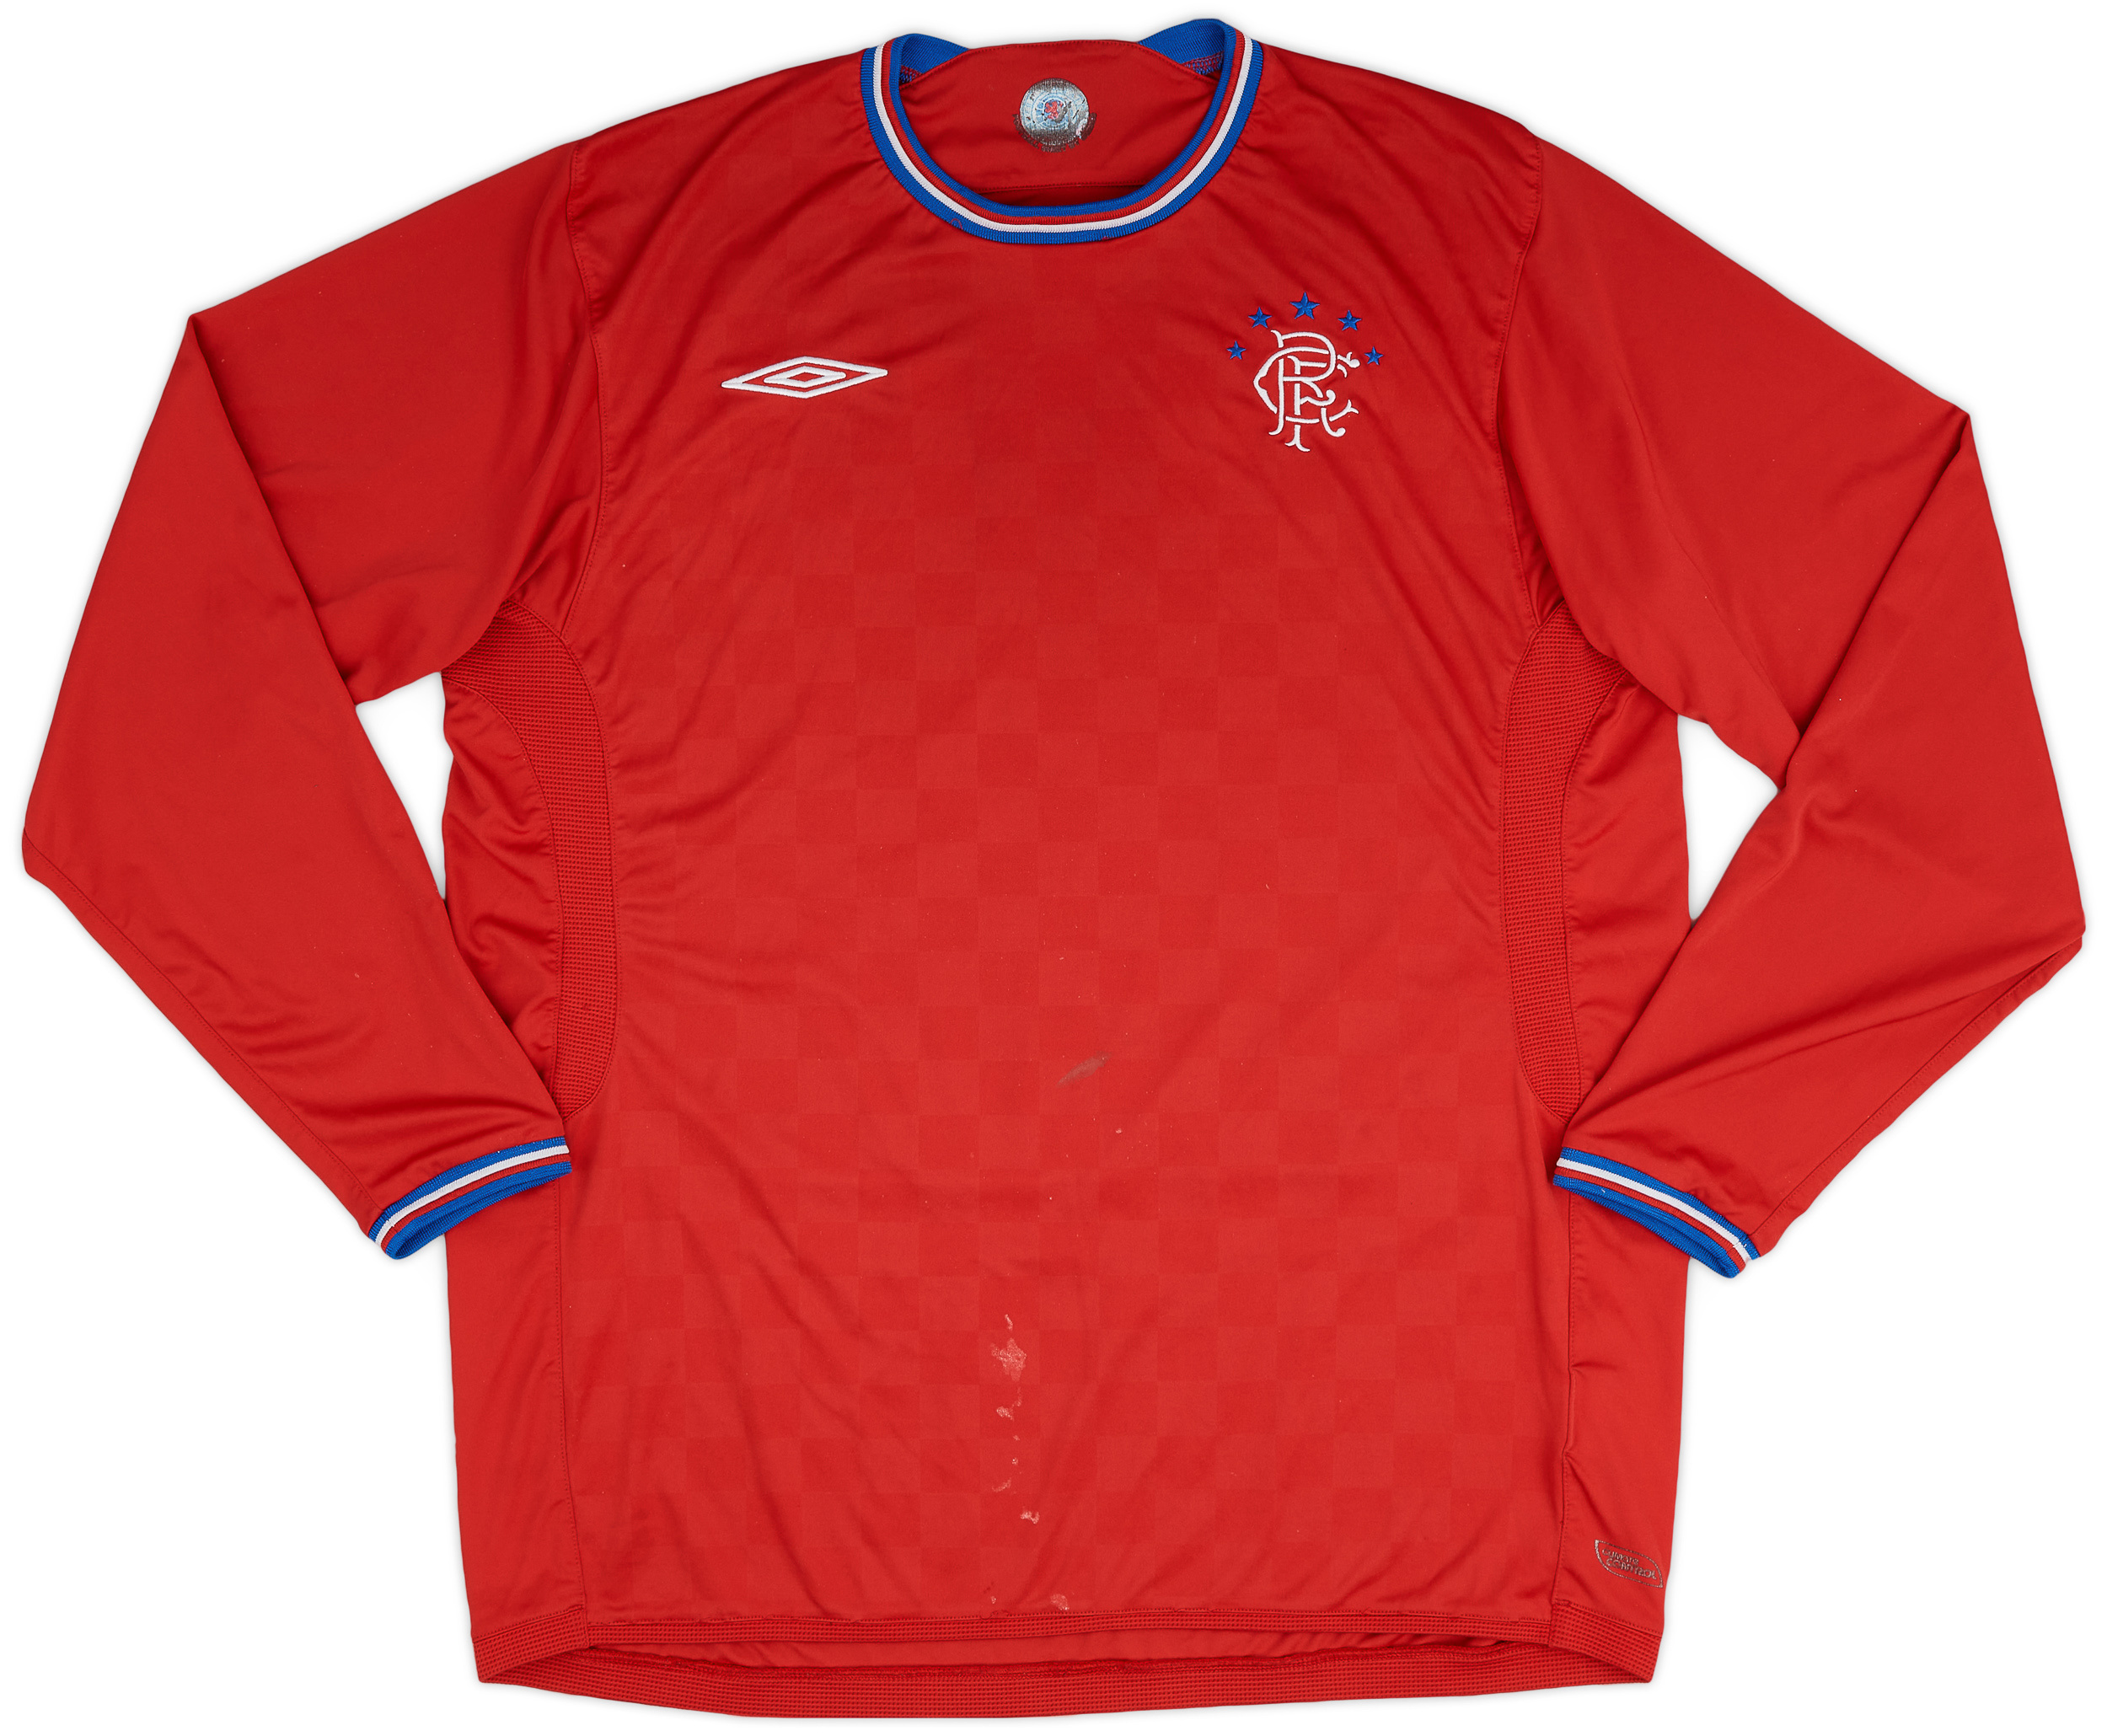 2009-10 Rangers Away Shirt - 4/10 - ()